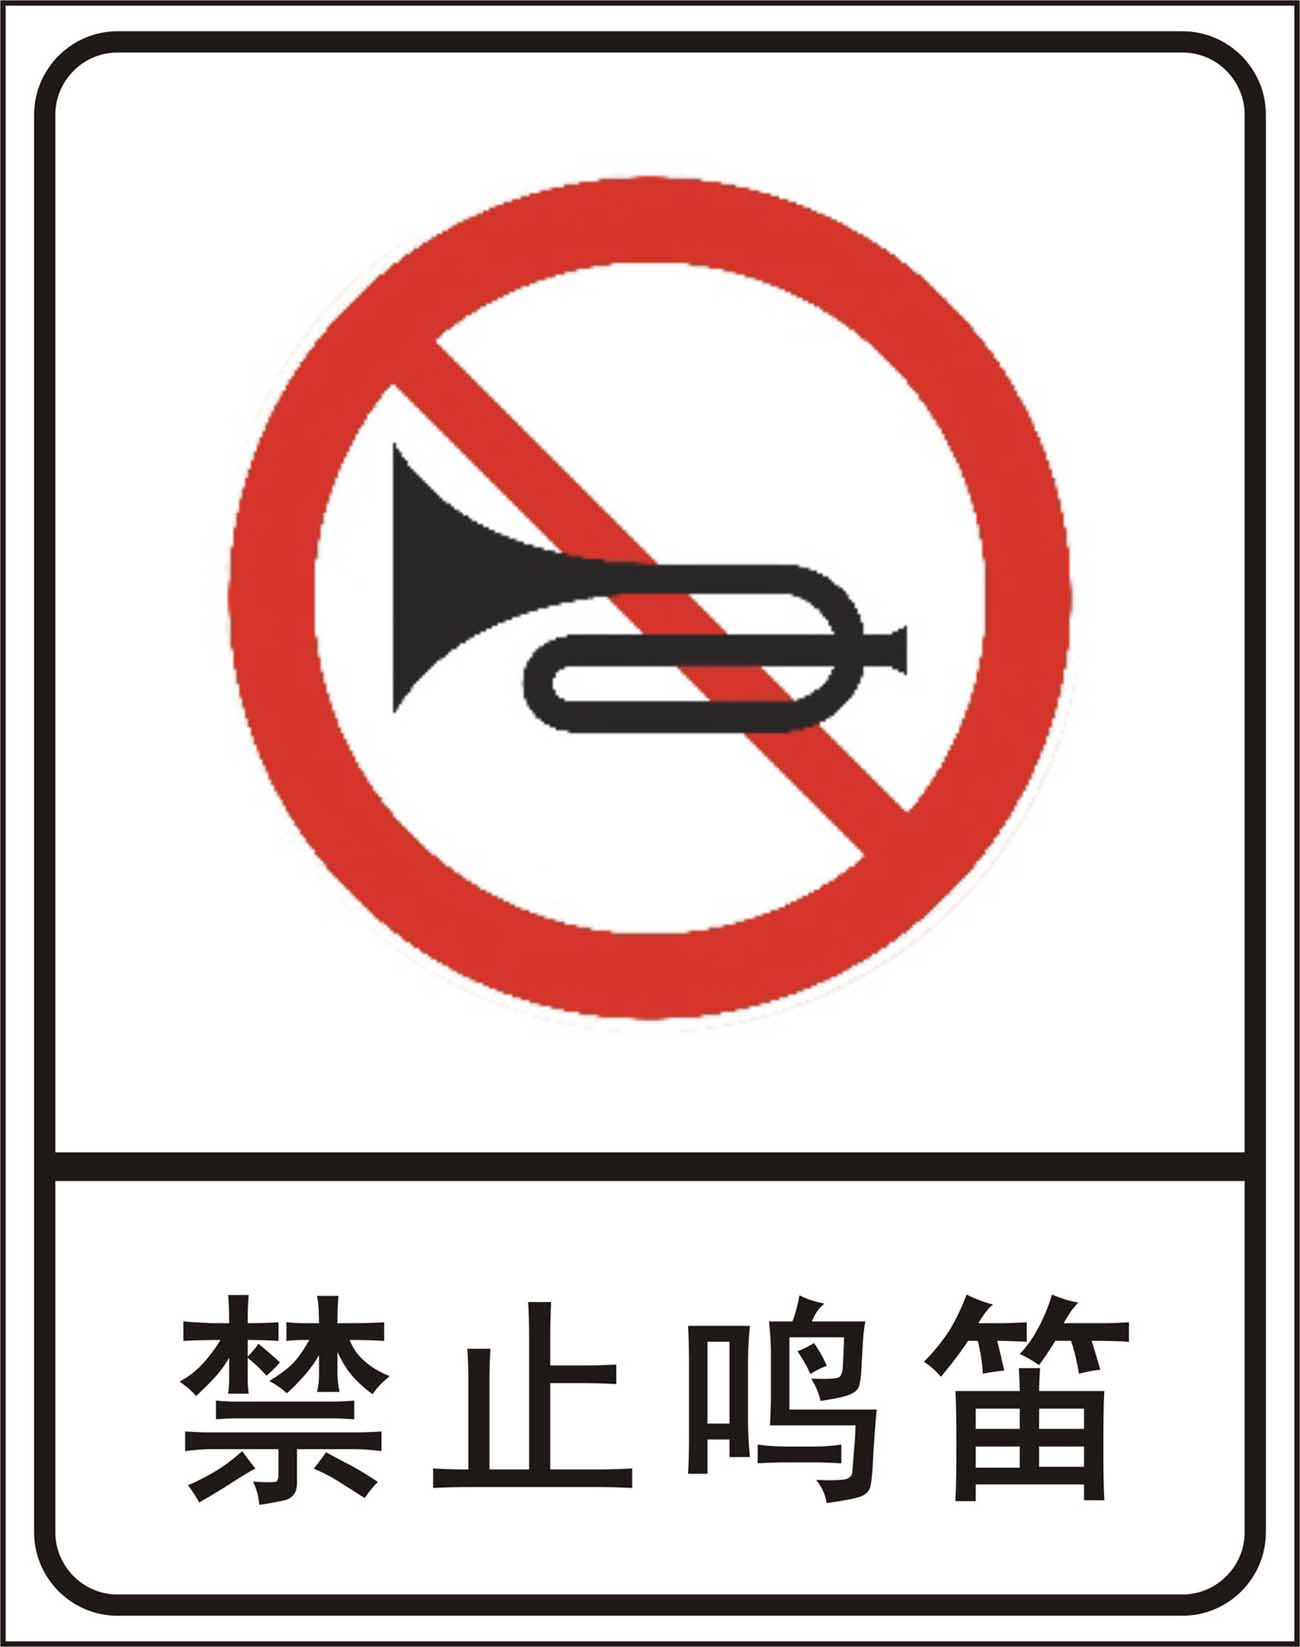 道路交通安全標志牌